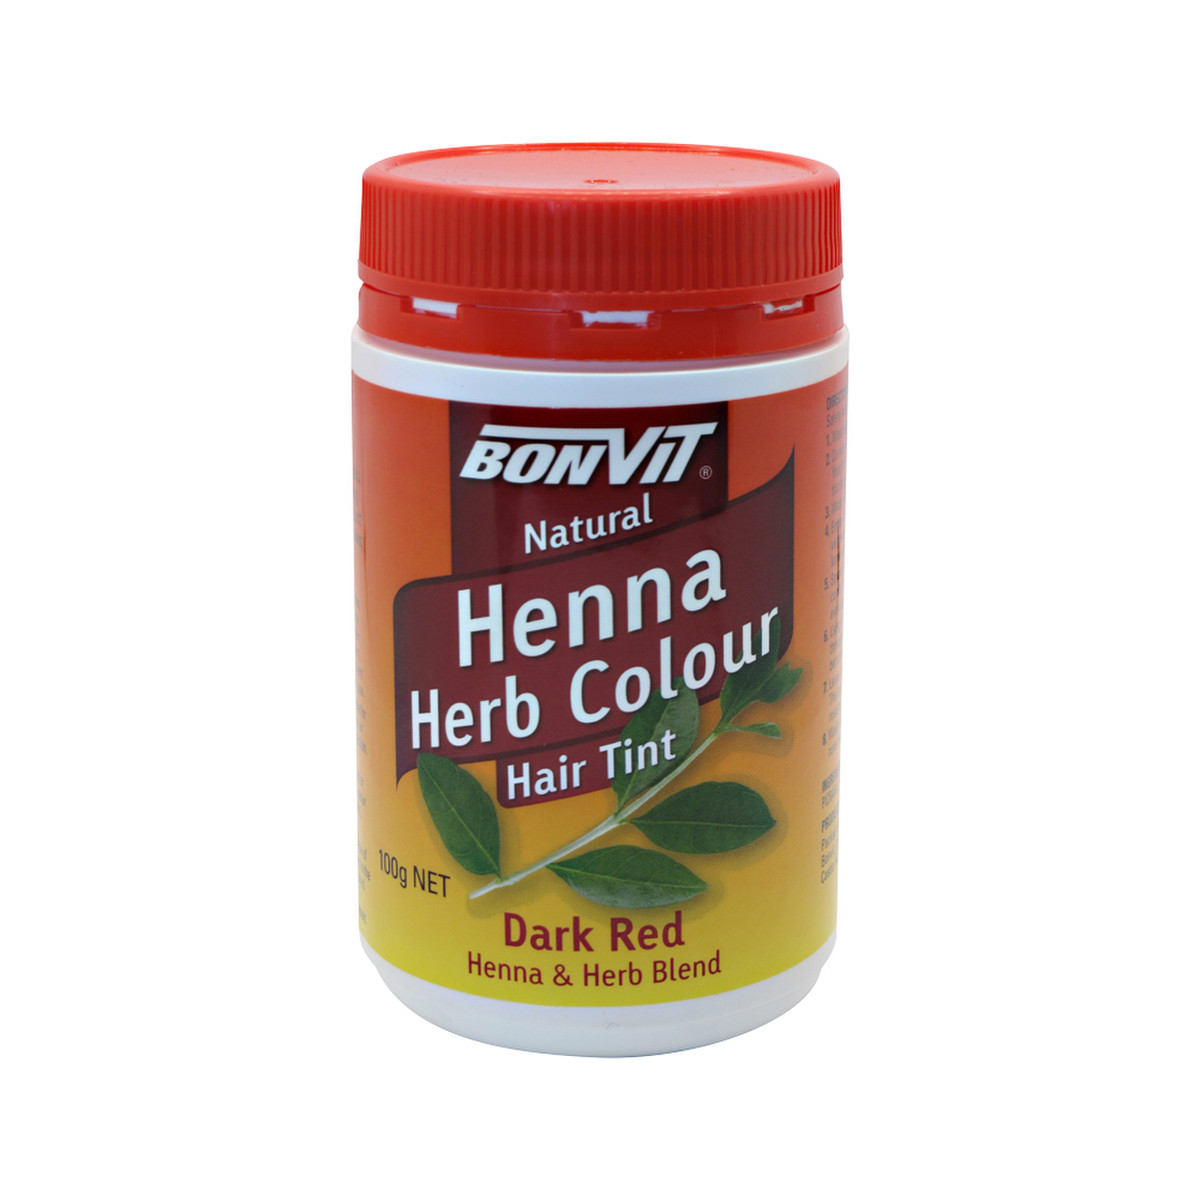 Bonvit Henna Herb Colour Hair Tint Dark Red 100g